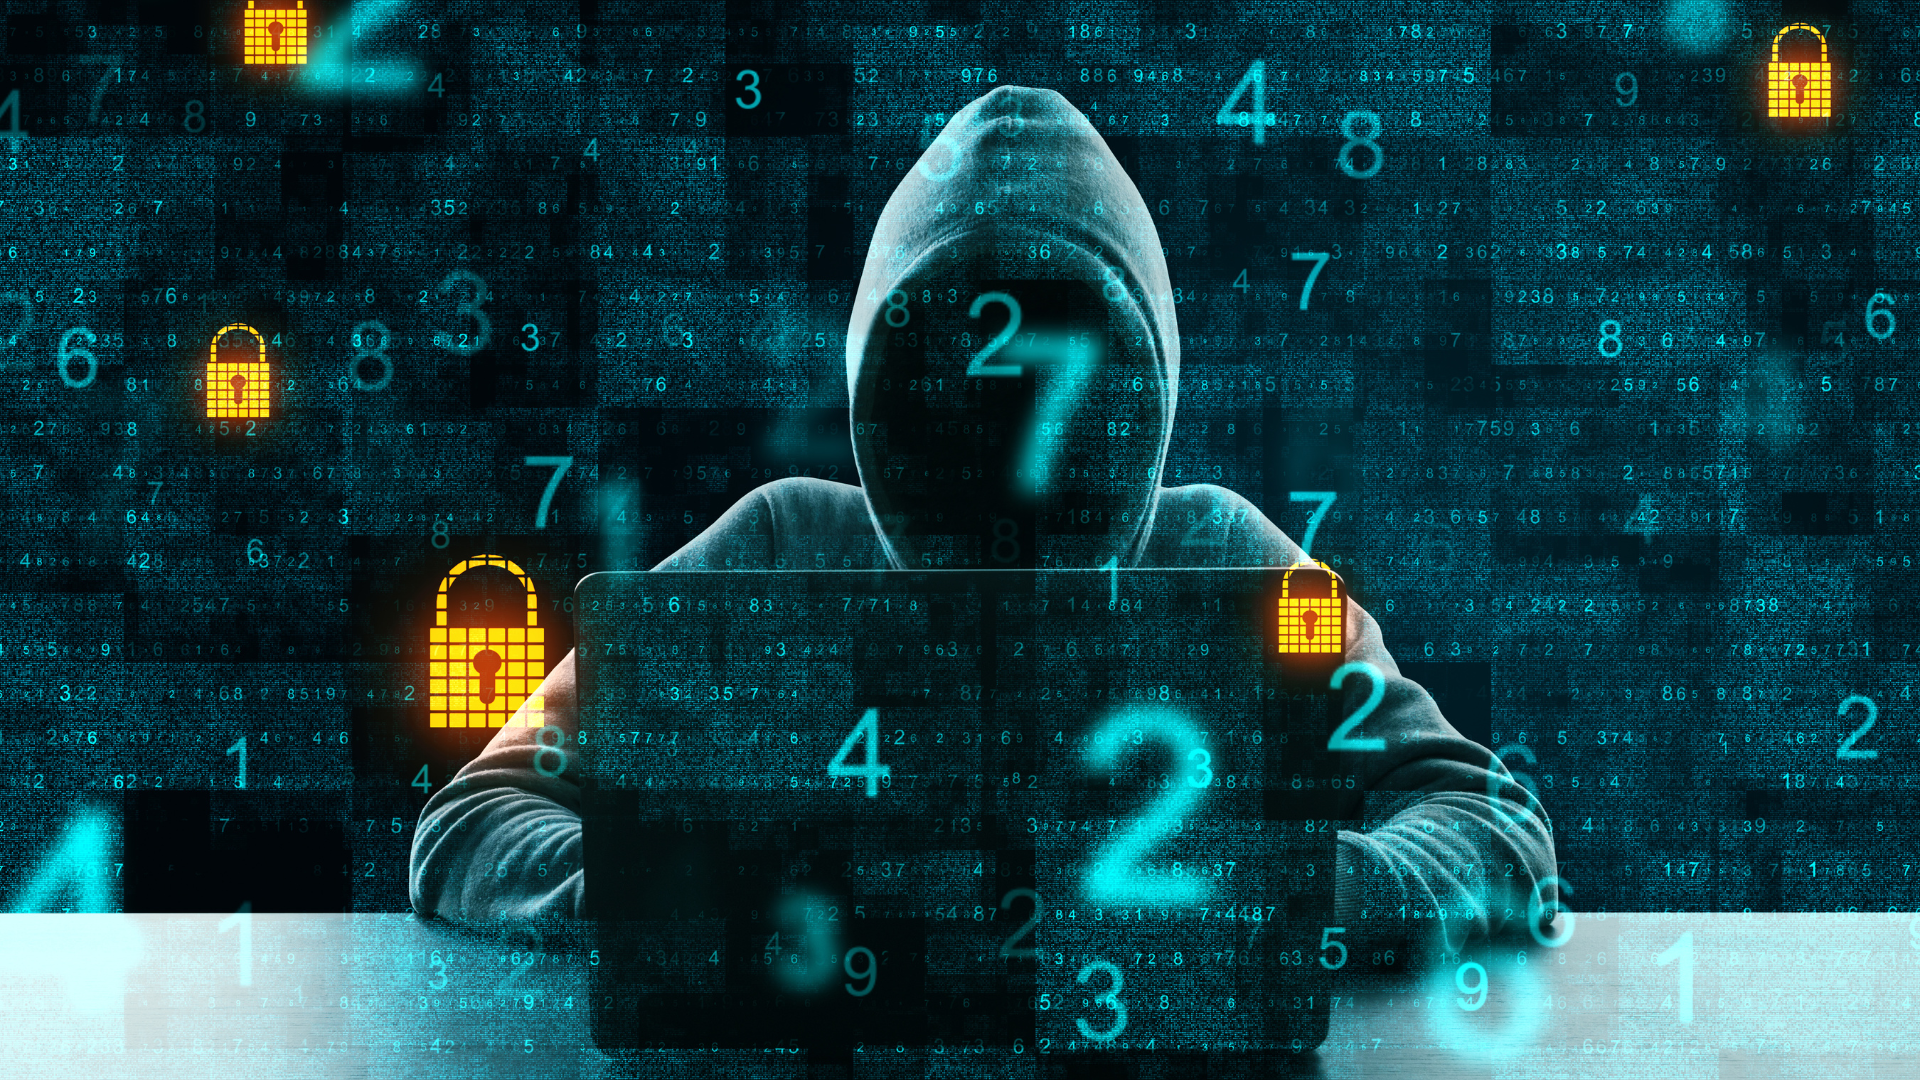 IT-kriminel sidder og hacker